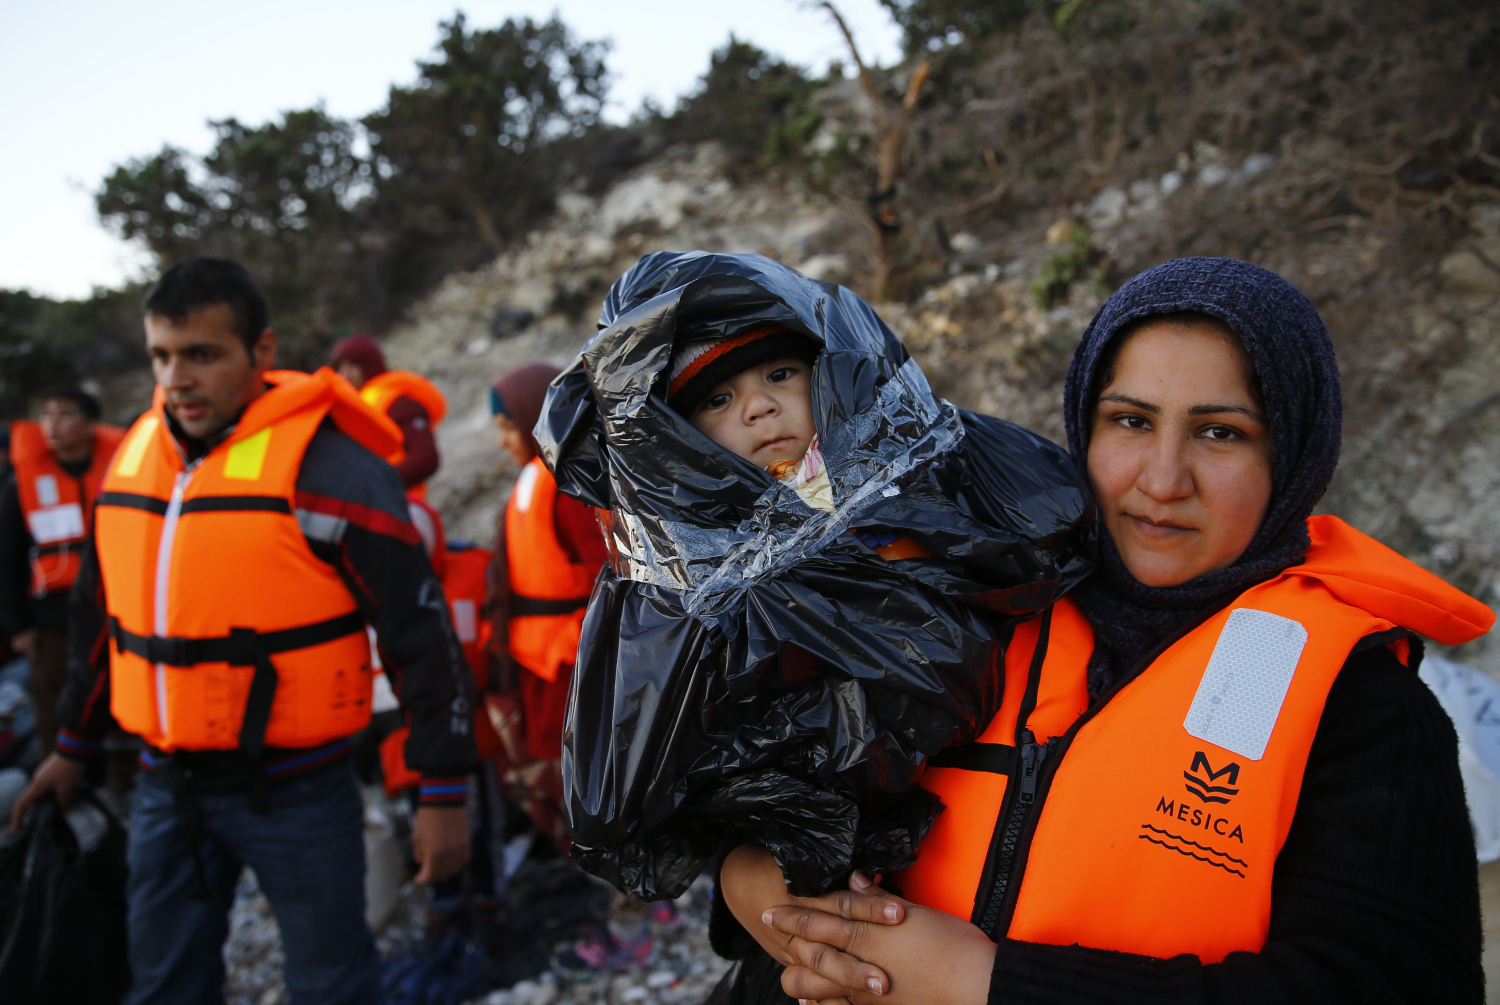 “Turquía acoge 2.2 millones de refugiados. Necesitamos compartir esta responsabilidad”